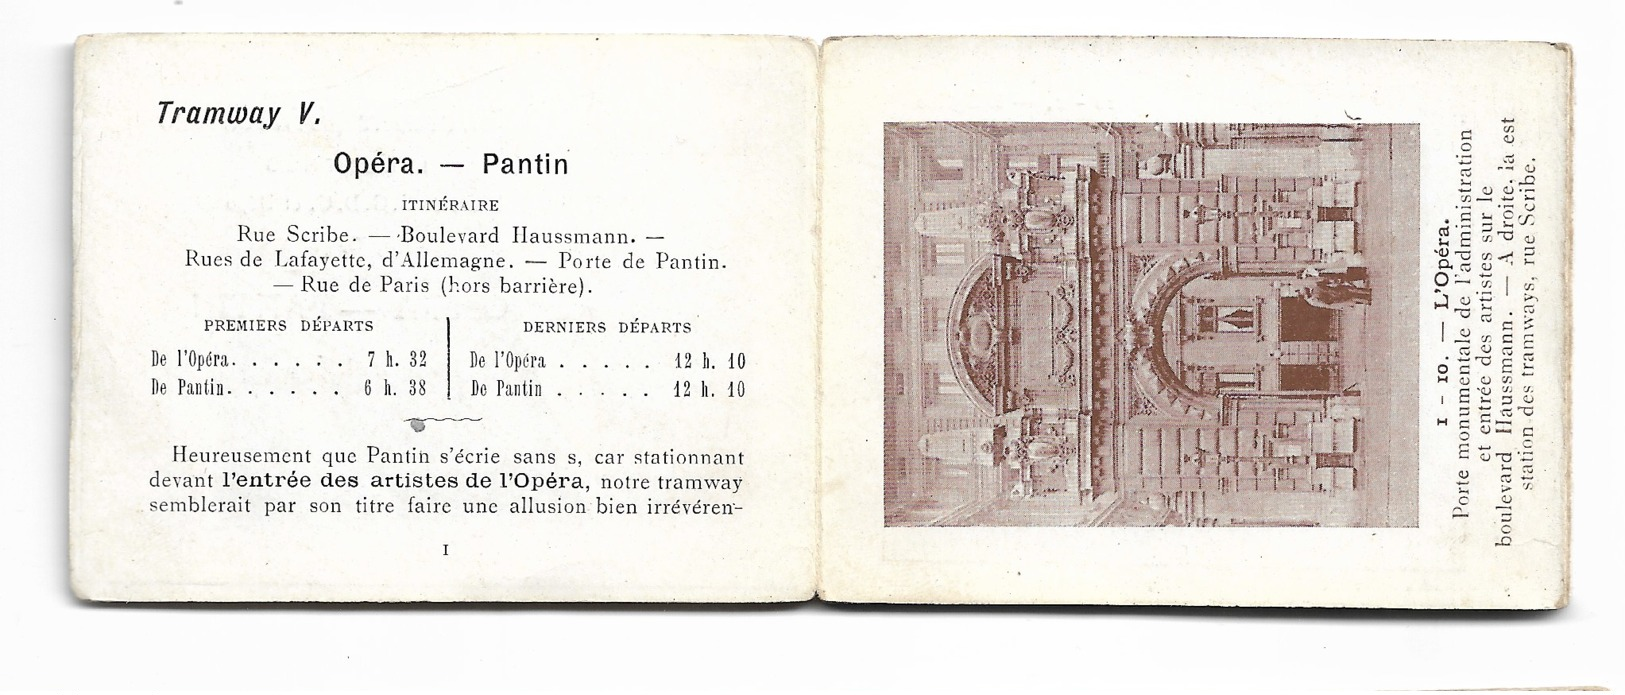 PARIS 1900: Nouveaux itinéraires illustrés, brevetés SGDG et déposés sd.lot exceptionnel de 8 dépliants